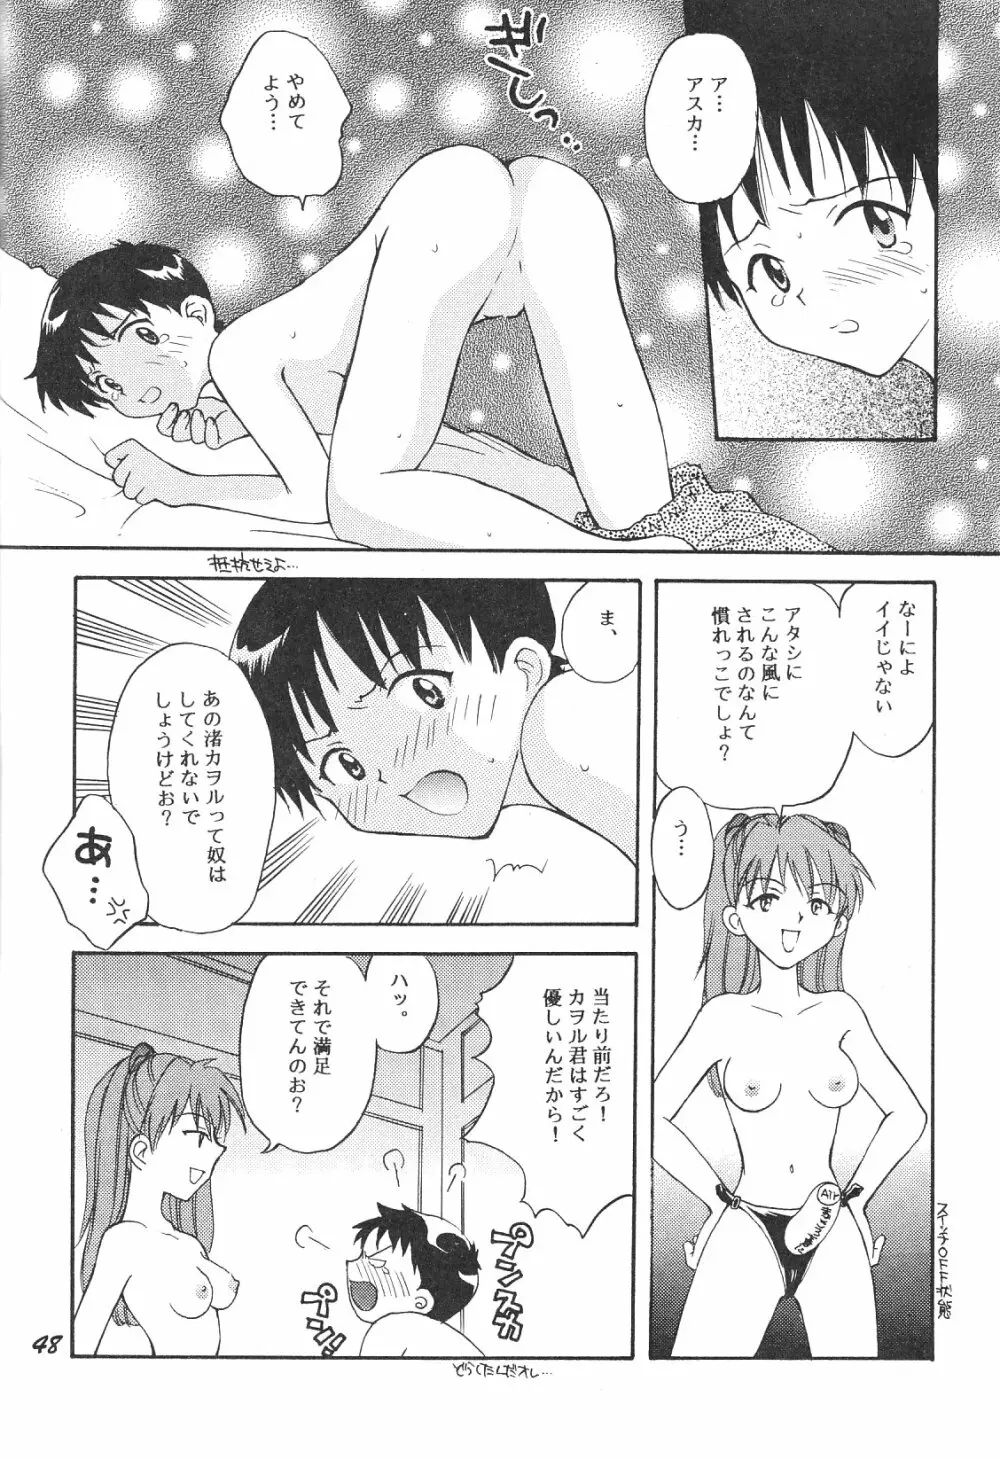 Maniac Juice 女シンジ再録集 '96-'99 - page48